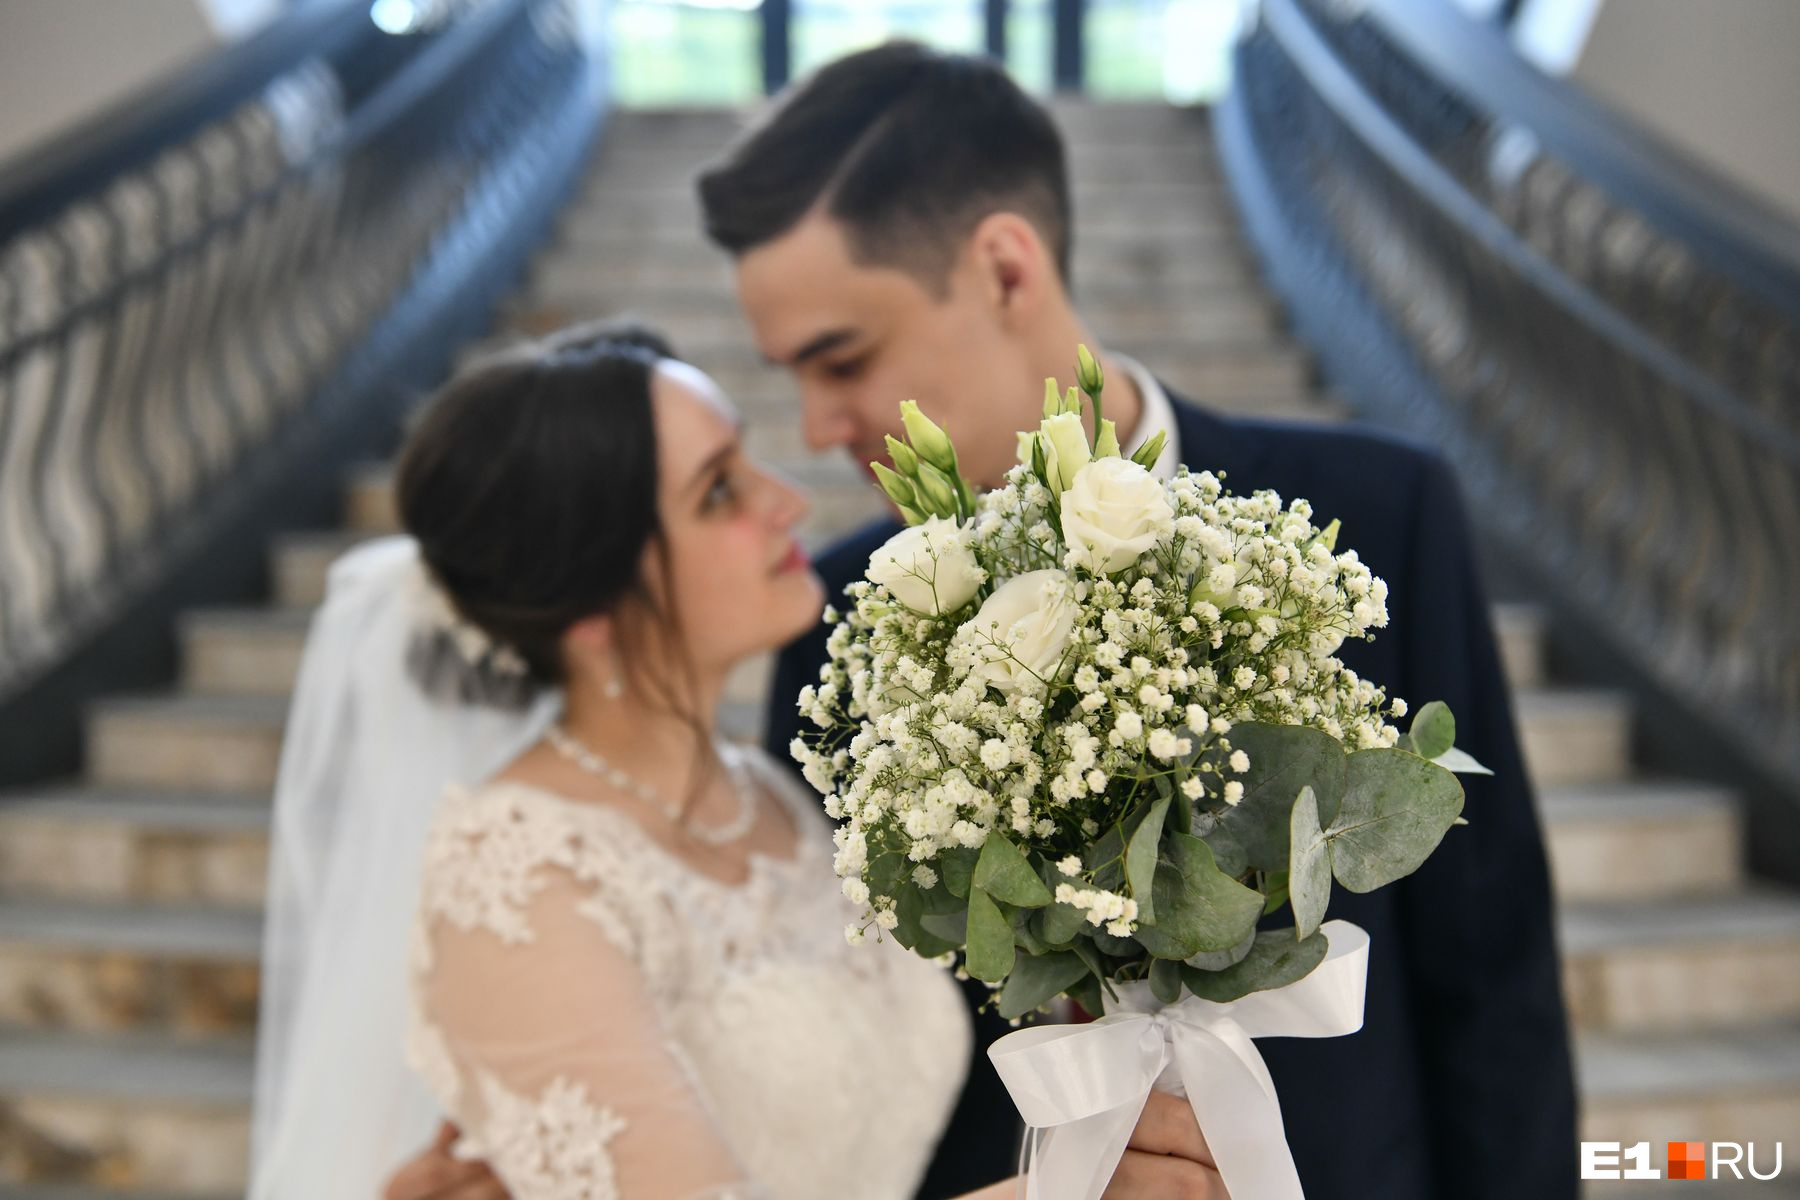 Ринат и Анастасия Ильясовы поженились в День семьи, любви и верности